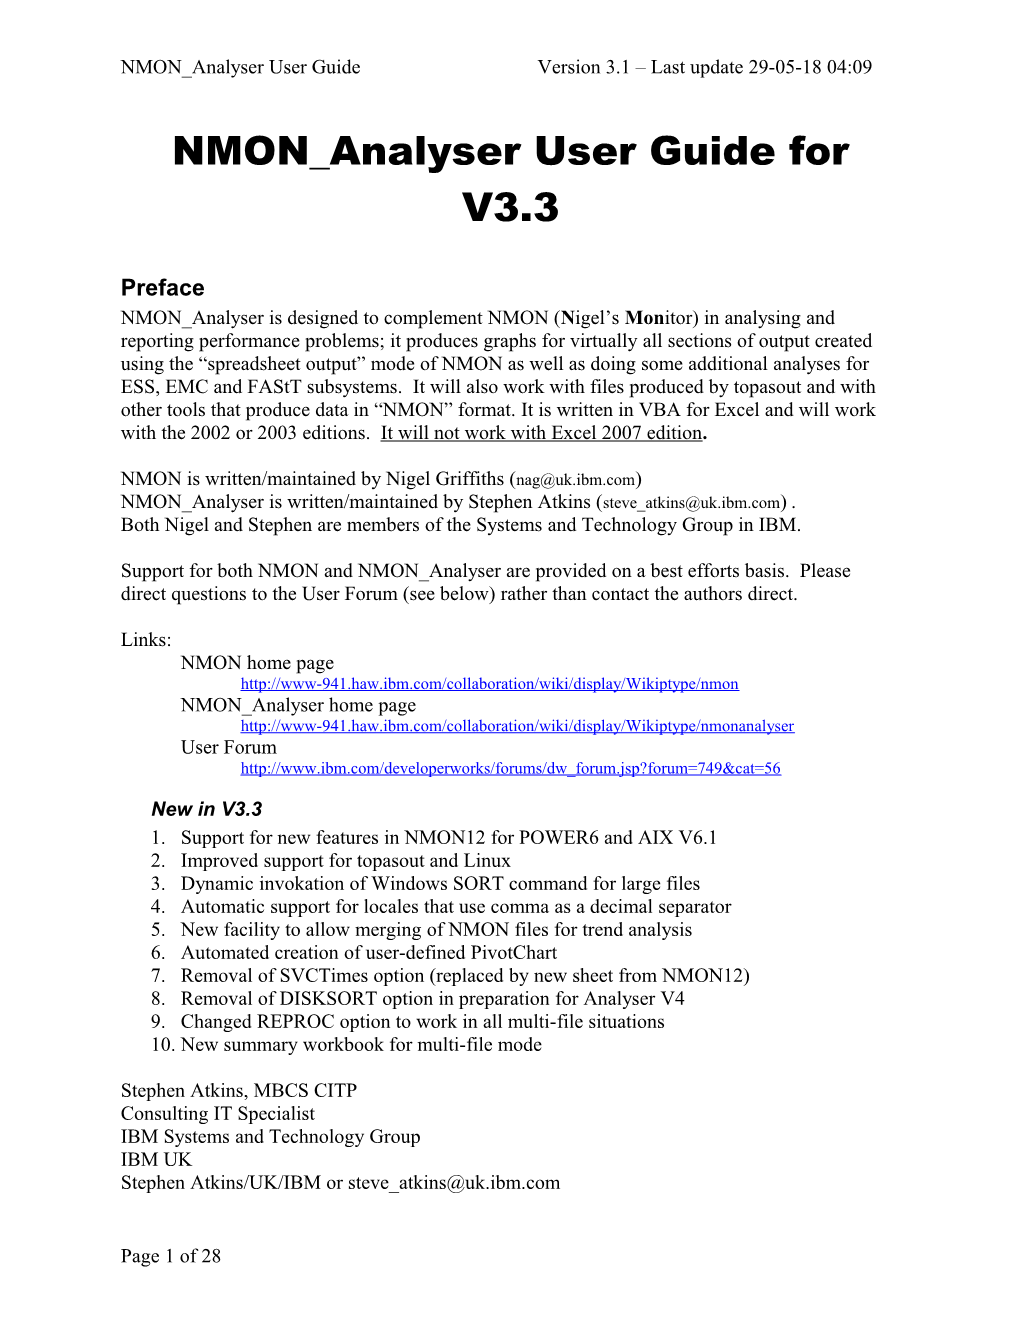 NMON Analyser User Guide for V2